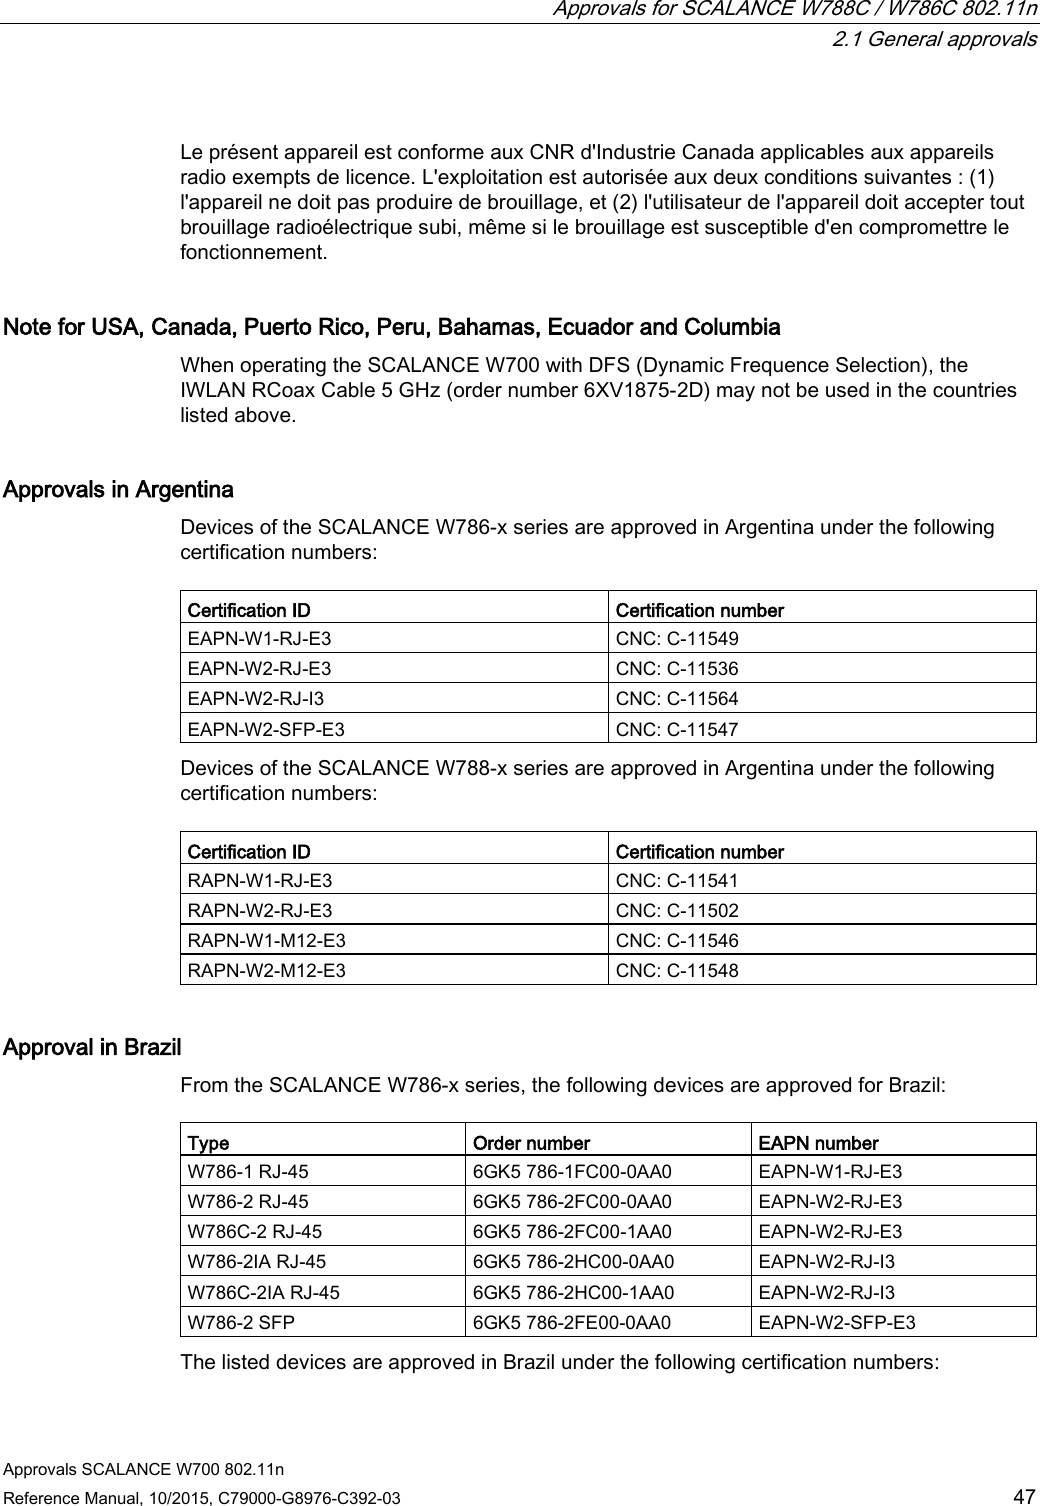  Approvals for SCALANCE W788C / W786C 802.11n  2.1 General approvals Approvals SCALANCE W700 802.11n Reference Manual, 10/2015, C79000-G8976-C392-03 47  Le présent appareil est conforme aux CNR d&apos;Industrie Canada applicables aux appareils radio exempts de licence. L&apos;exploitation est autorisée aux deux conditions suivantes : (1) l&apos;appareil ne doit pas produire de brouillage, et (2) l&apos;utilisateur de l&apos;appareil doit accepter tout brouillage radioélectrique subi, même si le brouillage est susceptible d&apos;en compromettre le fonctionnement. Note for USA, Canada, Puerto Rico, Peru, Bahamas, Ecuador and Columbia When operating the SCALANCE W700 with DFS (Dynamic Frequence Selection), the IWLAN RCoax Cable 5 GHz (order number 6XV1875-2D) may not be used in the countries listed above. Approvals in Argentina Devices of the SCALANCE W786-x series are approved in Argentina under the following certification numbers:  Certification ID Certification number EAPN-W1-RJ-E3 CNC: C-11549 EAPN-W2-RJ-E3  CNC: C-11536 EAPN-W2-RJ-I3 CNC: C-11564 EAPN-W2-SFP-E3  CNC: C-11547 Devices of the SCALANCE W788-x series are approved in Argentina under the following certification numbers:  Certification ID Certification number RAPN-W1-RJ-E3 CNC: C-11541 RAPN-W2-RJ-E3 CNC: C-11502 RAPN-W1-M12-E3 CNC: C-11546 RAPN-W2-M12-E3 CNC: C-11548 Approval in Brazil From the SCALANCE W786-x series, the following devices are approved for Brazil:  Type Order number EAPN number W786-1 RJ-45 6GK5 786-1FC00-0AA0 EAPN-W1-RJ-E3 W786-2 RJ-45 6GK5 786-2FC00-0AA0 EAPN-W2-RJ-E3 W786C-2 RJ-45 6GK5 786-2FC00-1AA0 EAPN-W2-RJ-E3 W786-2IA RJ-45 6GK5 786-2HC00-0AA0 EAPN-W2-RJ-I3 W786C-2IA RJ-45 6GK5 786-2HC00-1AA0 EAPN-W2-RJ-I3 W786-2 SFP 6GK5 786-2FE00-0AA0 EAPN-W2-SFP-E3 The listed devices are approved in Brazil under the following certification numbers: 